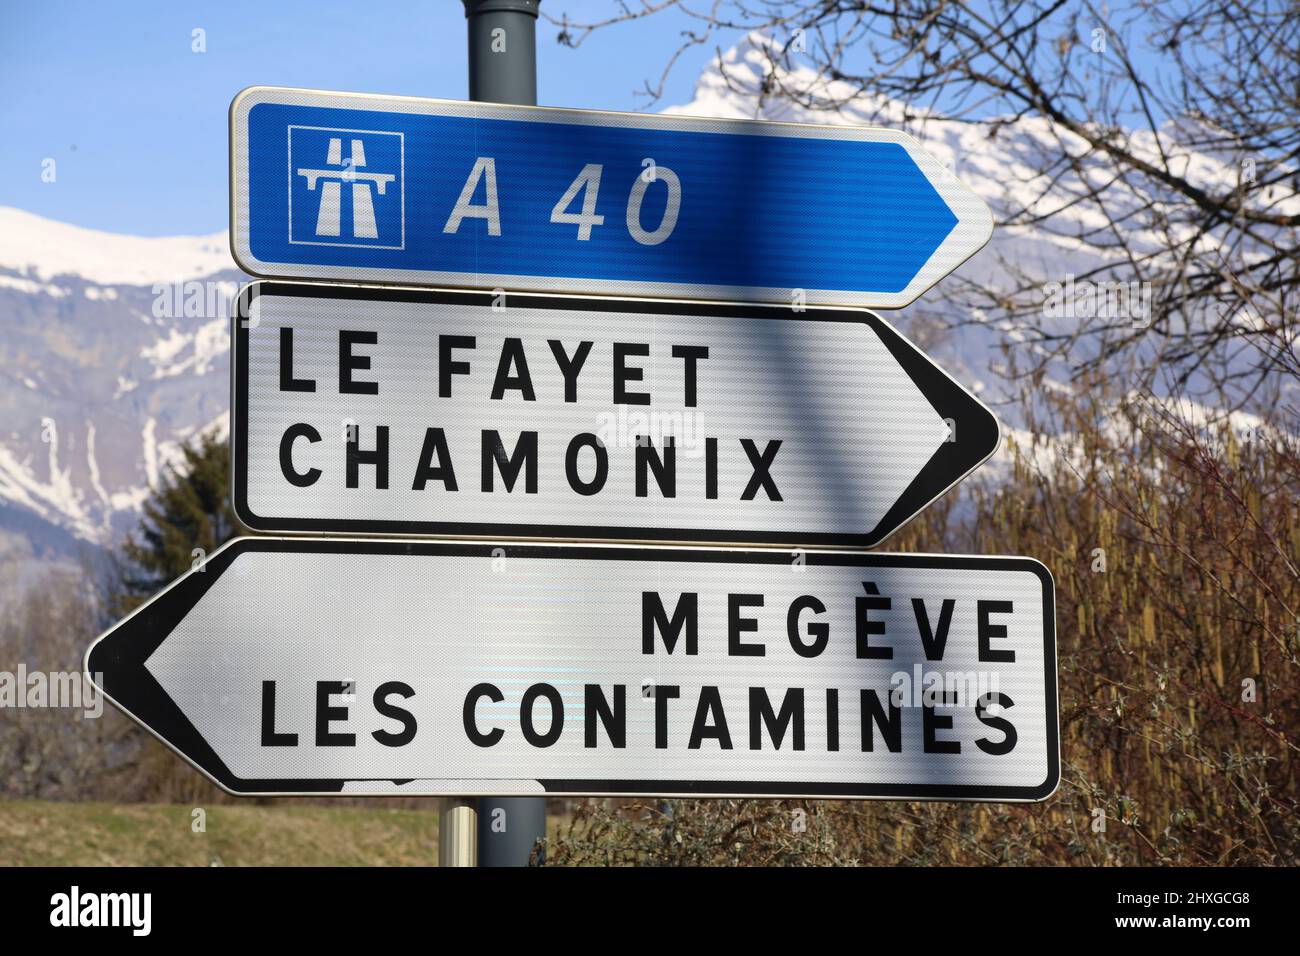 A40. Le Fayet. Chamonix. Megève. Les Contamines. Panneau routier. Saint-Gervais-les-Bains. Haute-Savoie. Auvergne-Rhône-Alpes. Haute-Savoie. France. Stock Photo